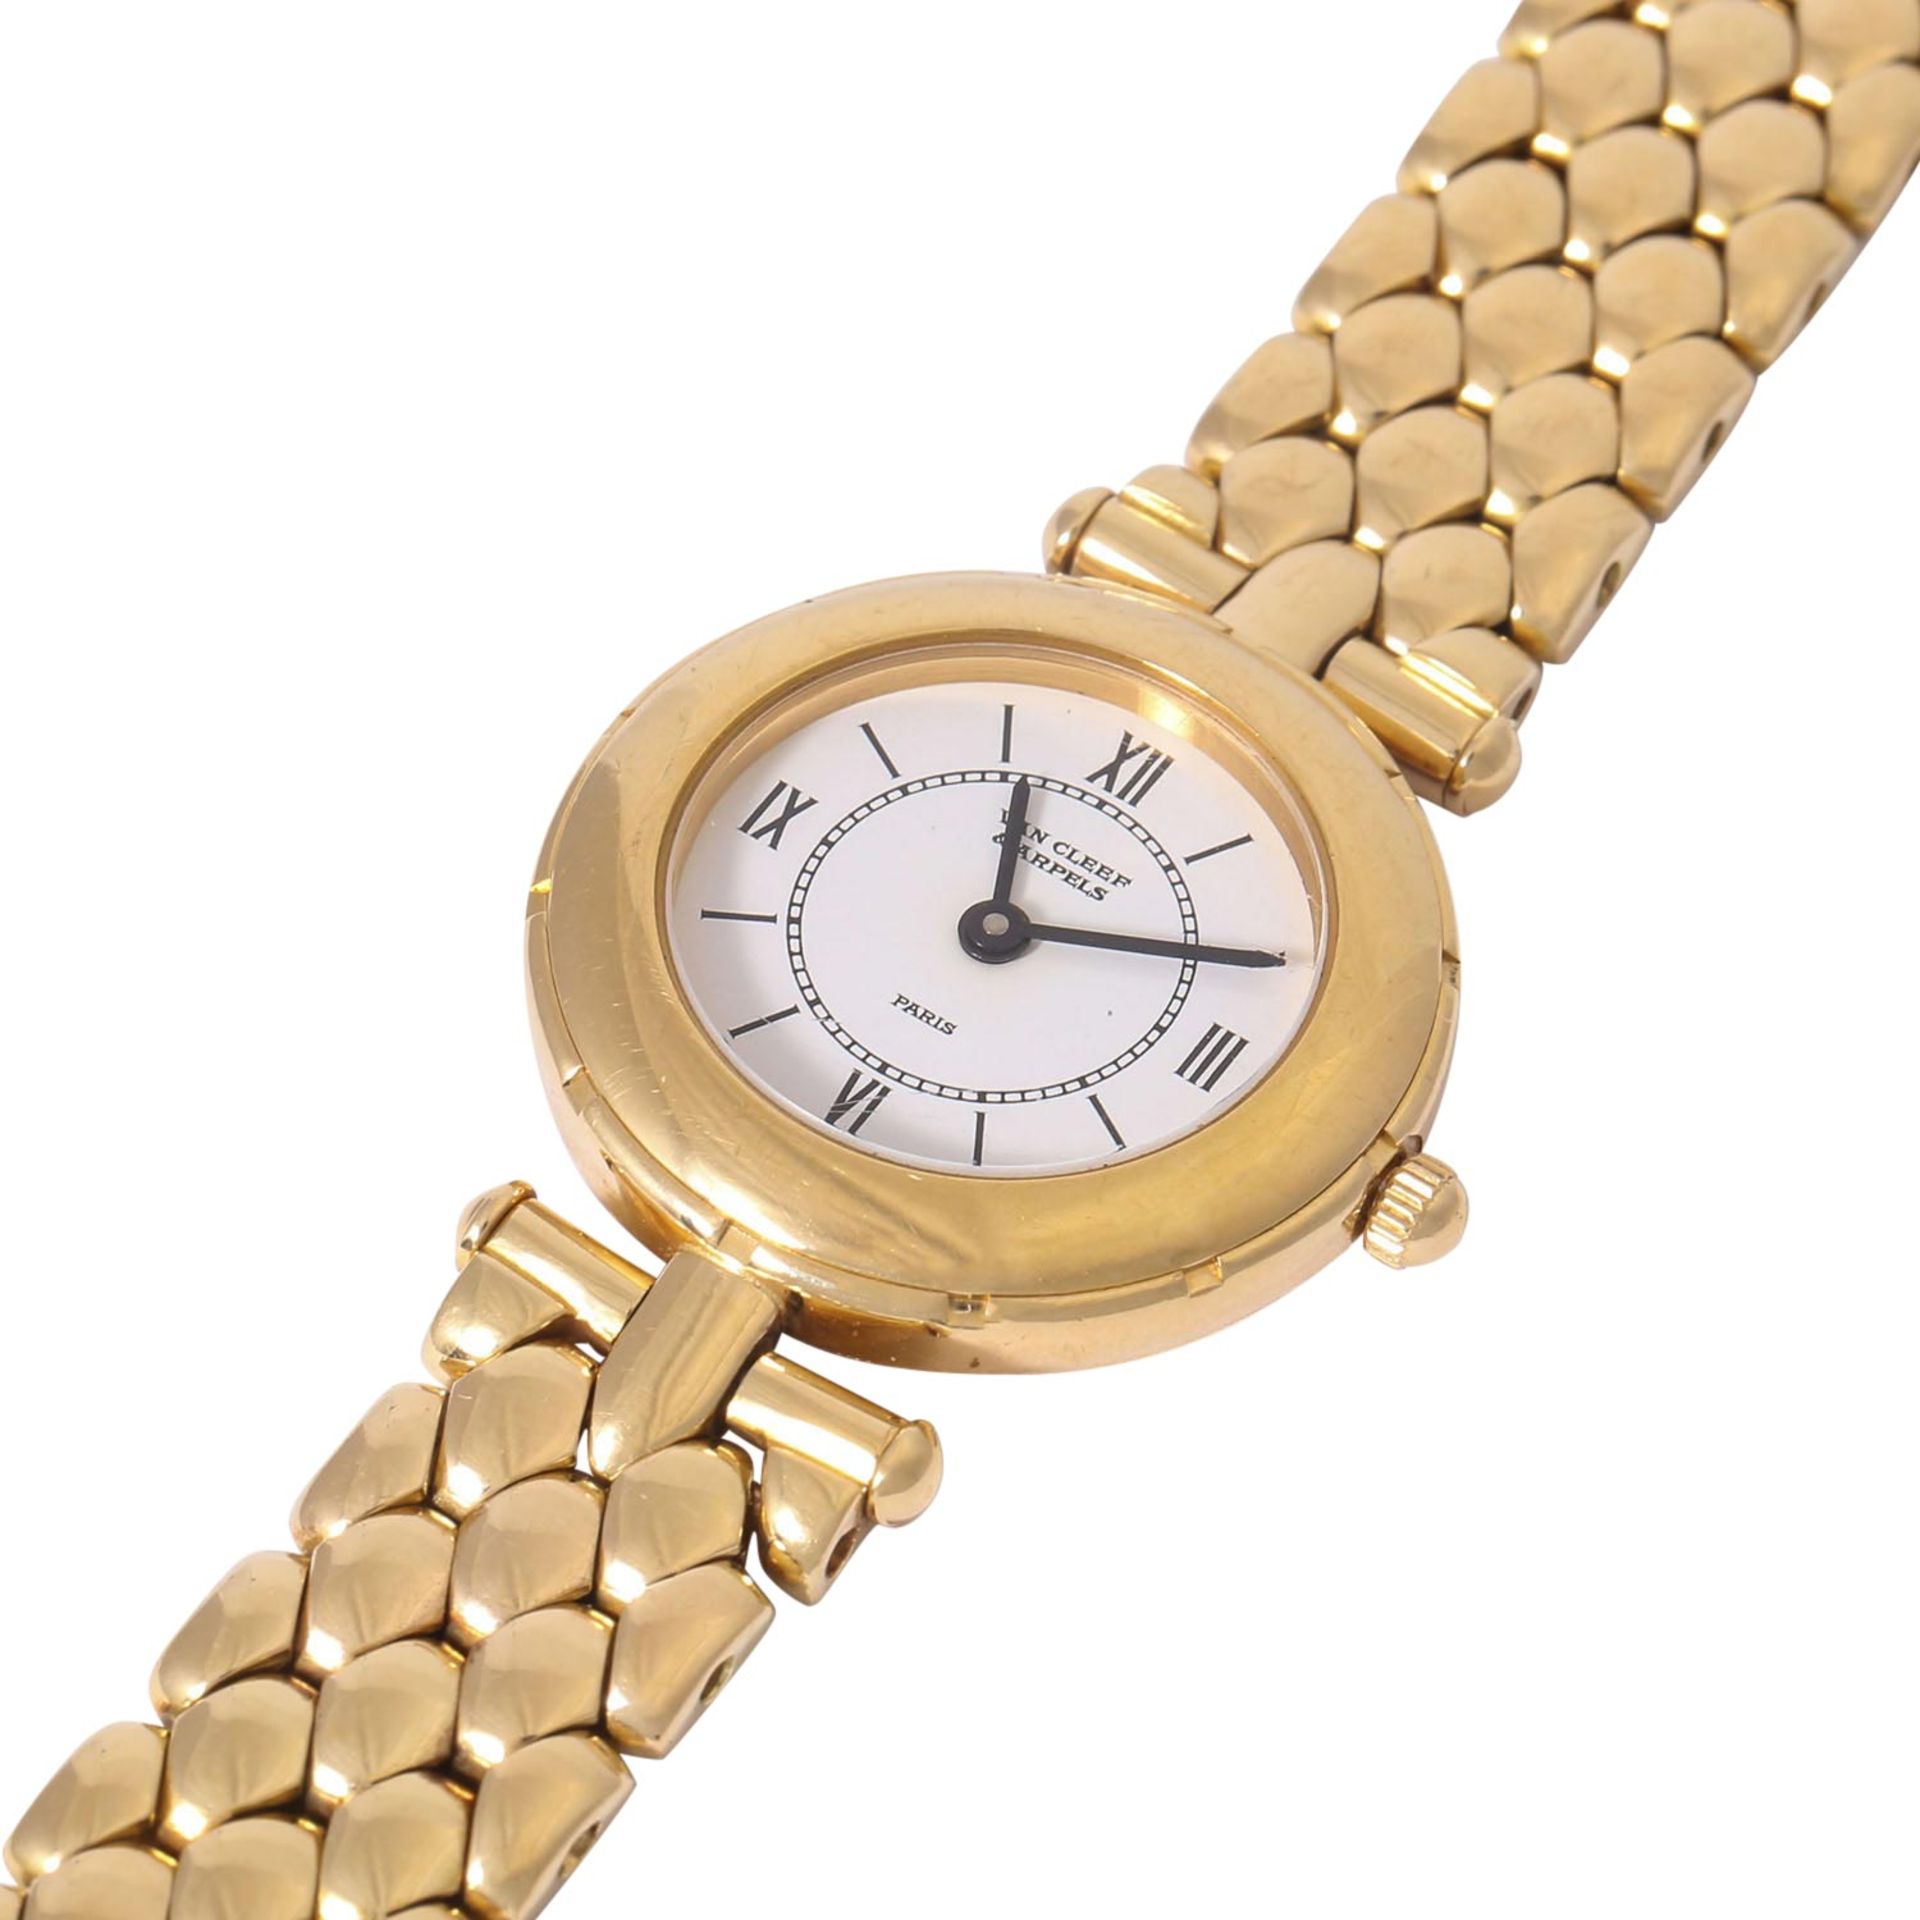 VAN CLEEF & ARPELS hochfeine Damen Armbanduhr, Ref. 13607. Ca. 1990er Jahre. - Image 5 of 8